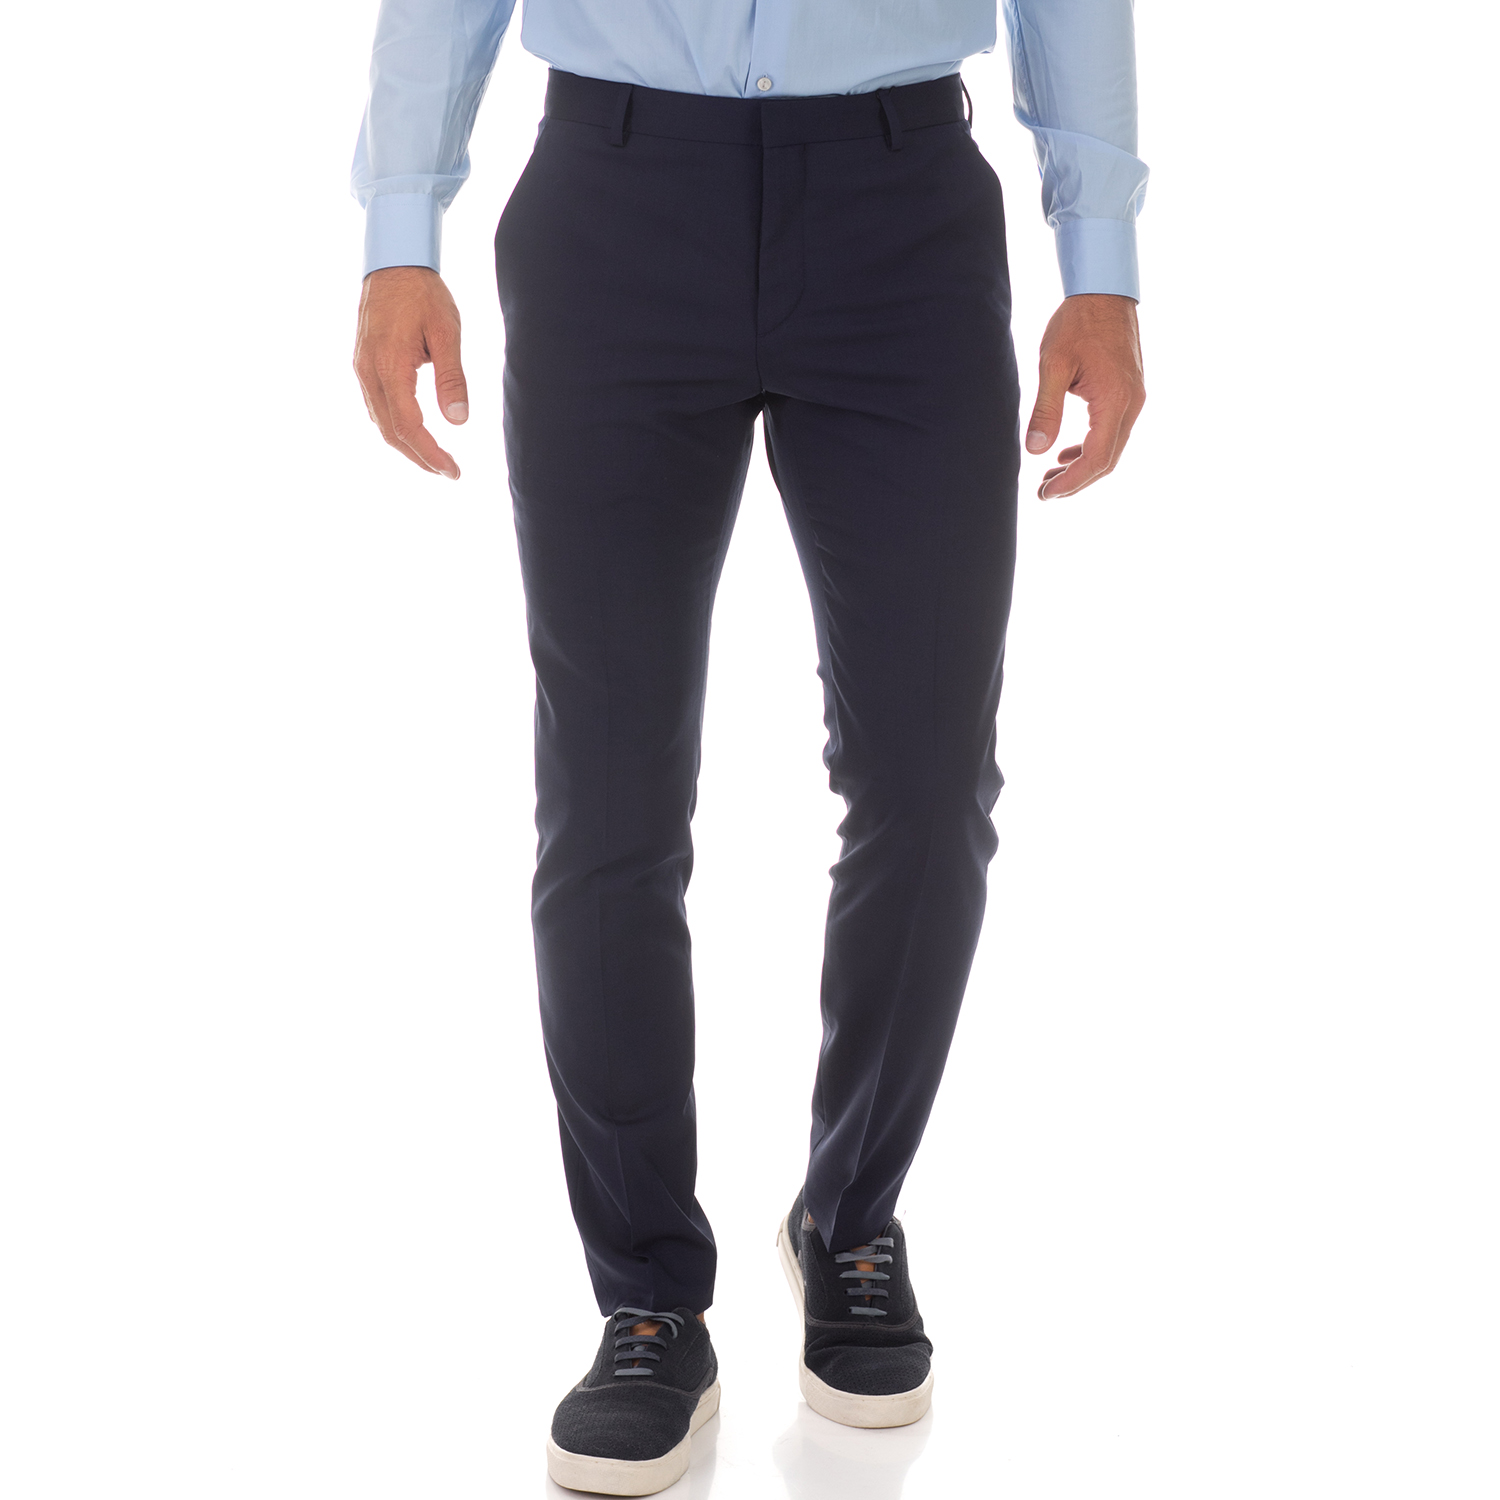 Ανδρικά/Ρούχα/Παντελόνια/Ισια Γραμμή CK - Ανδρικό παντελόνι CK μπλε